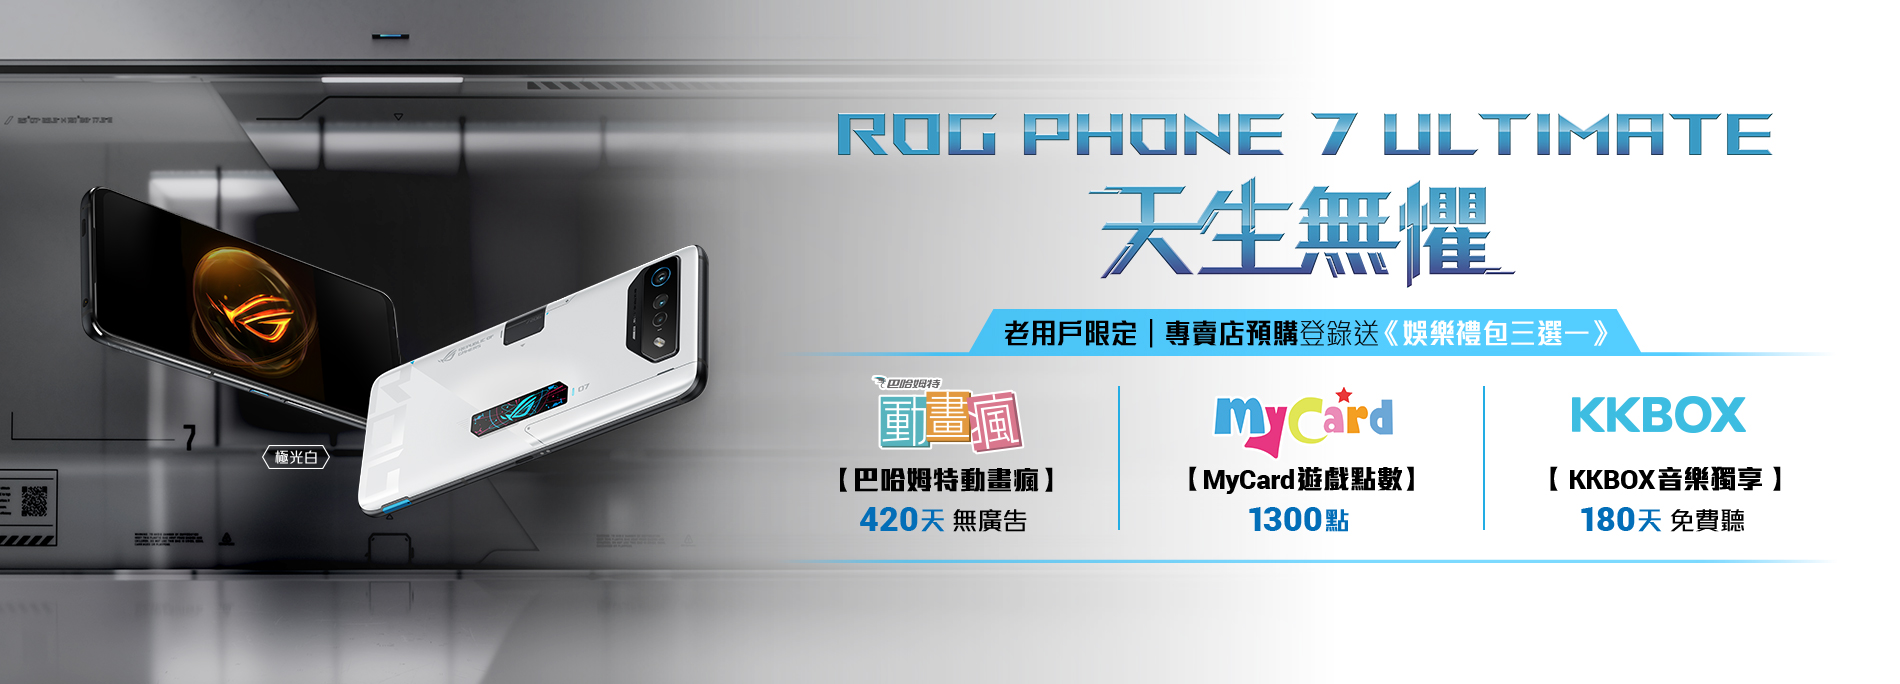 老用戶限定｜專賣店預購ROG Phone 7 Ultimate登錄送《娛樂禮包三選一》